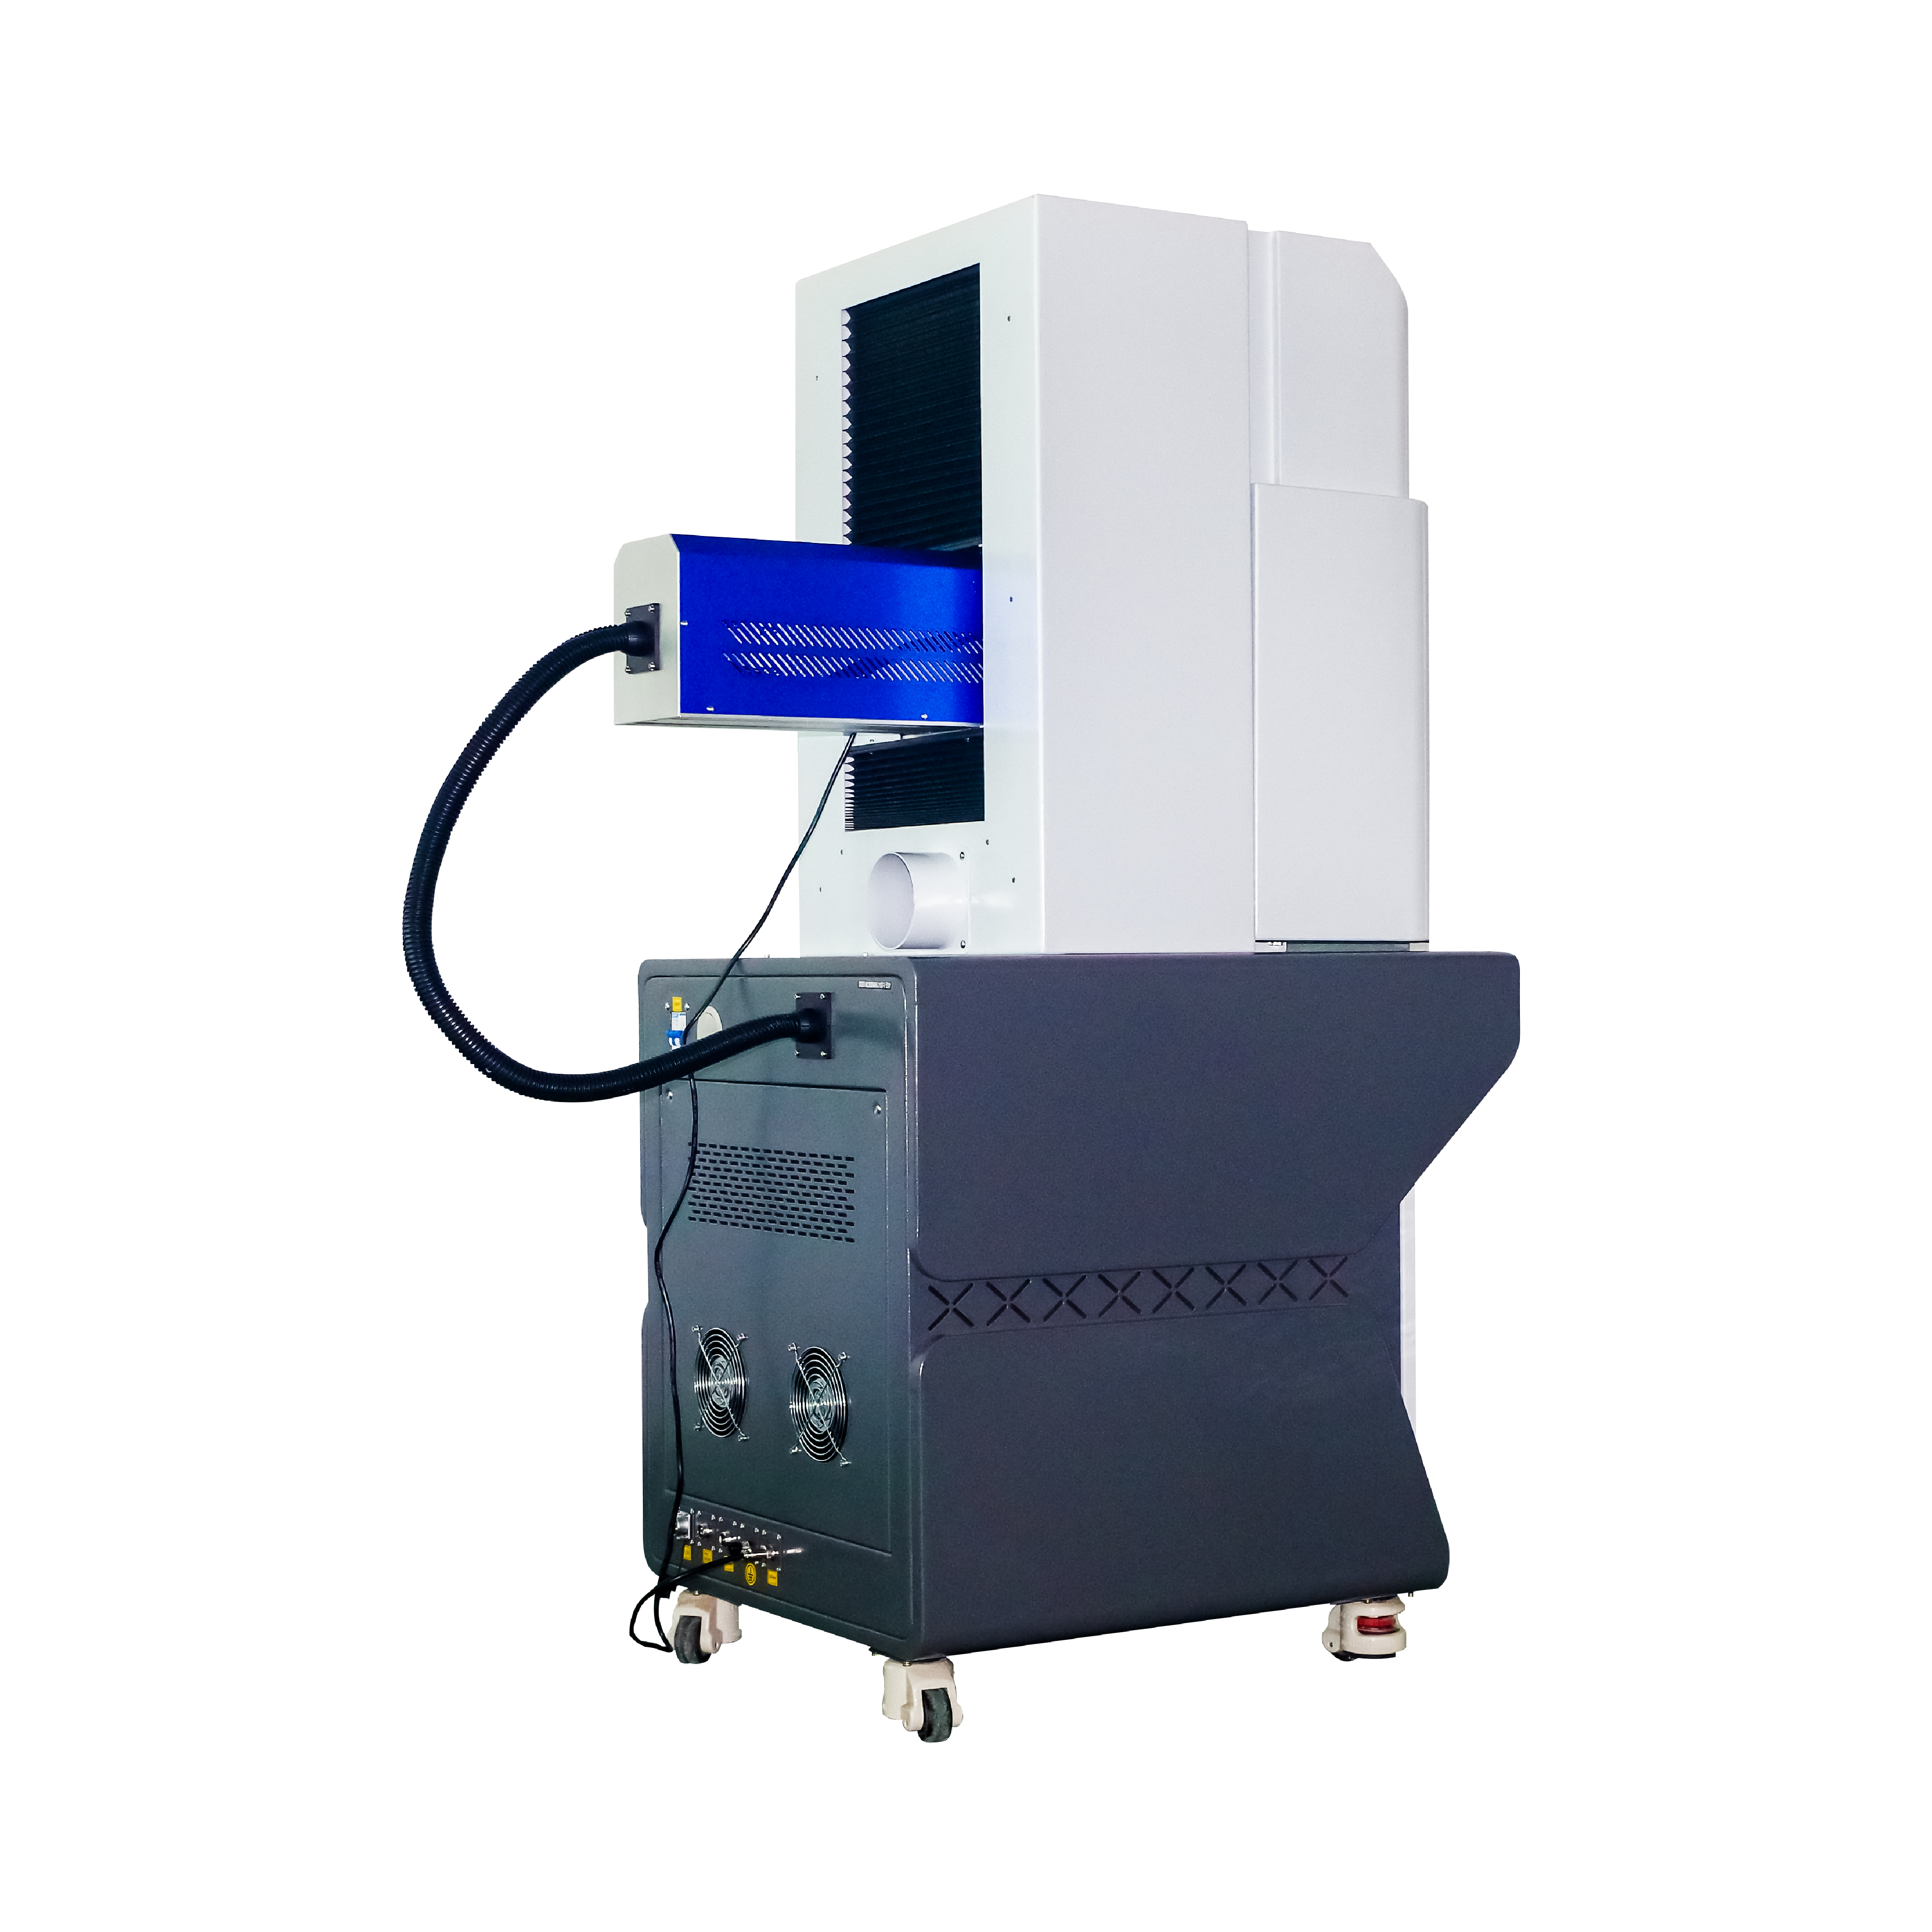 Enclosed 30W 35W 60W โลหะหลอด CO2 เลเซอร์แกะสลักเครื่อง DAVI Laser Marker สำหรับพลาสติกอะคริลิคกระดาษหนังผลิตภัณฑ์ไม้